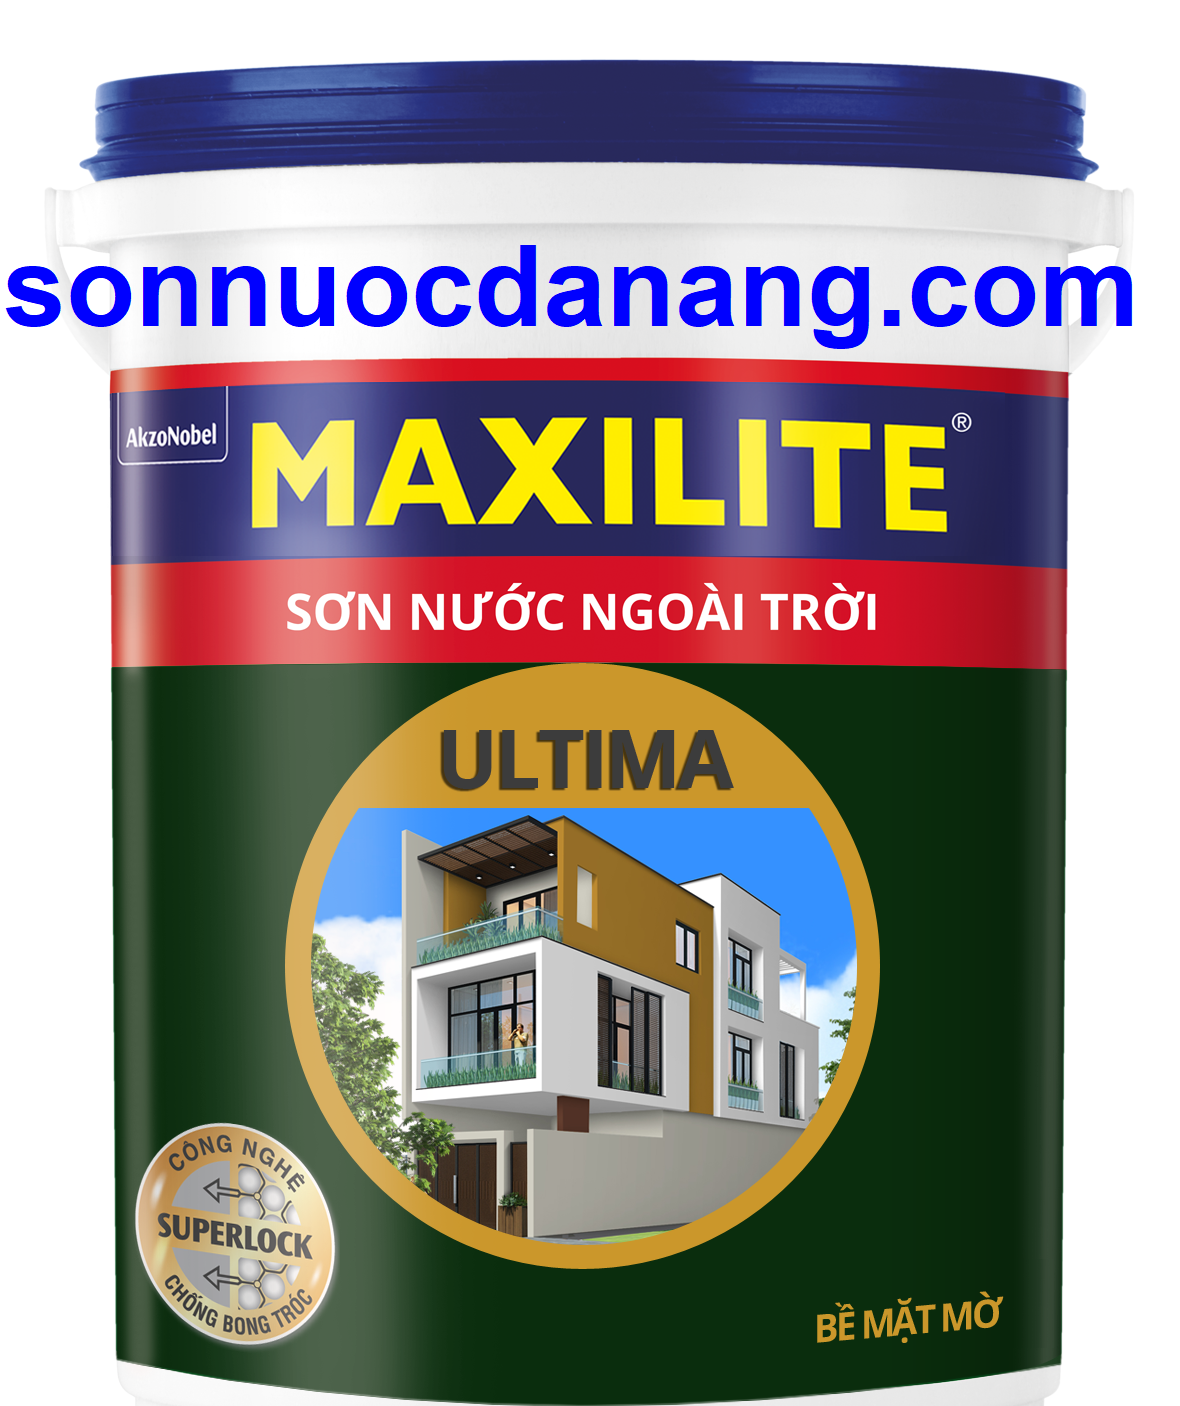 SƠN NƯỚC NGOÀI TRỜI MAXILITE ULTIMA - BỀ MẶT BÓNG MỜ - LU2 tại Đà Nẵng là 1 loại sơn ngoại thất cho nhà đẹp lâu hơn nhờ màng sơn chắc khỏe, giúp chống bong tróc vượt trội với mức giá rất hợp lý. Với Sơn Nước Ngoài Trời Maxilite Ultima bạn sẽ thoải mái lựa chọn trong 1.192 màu sắc đa dạng, phong phú và hai loại bề mặt bóng, bề mặt mờ.
Công nghệ tiên tiến SuperLock giúp giữ màu đẹp lâu phai hơn nhờ màng sơn chắc khỏe giúp chống bong tróc vượt trội. Thành phần nhựa Polymer cao cấp giúp tăng độ kết dính của các chuỗi phân tử, độ bám dính của màng sơn vào tường.
Sơn Nước Ngoài Trời Maxilite Ultima - Chống bong tróc vượt trội nhờ màng sơn chắc khỏe.